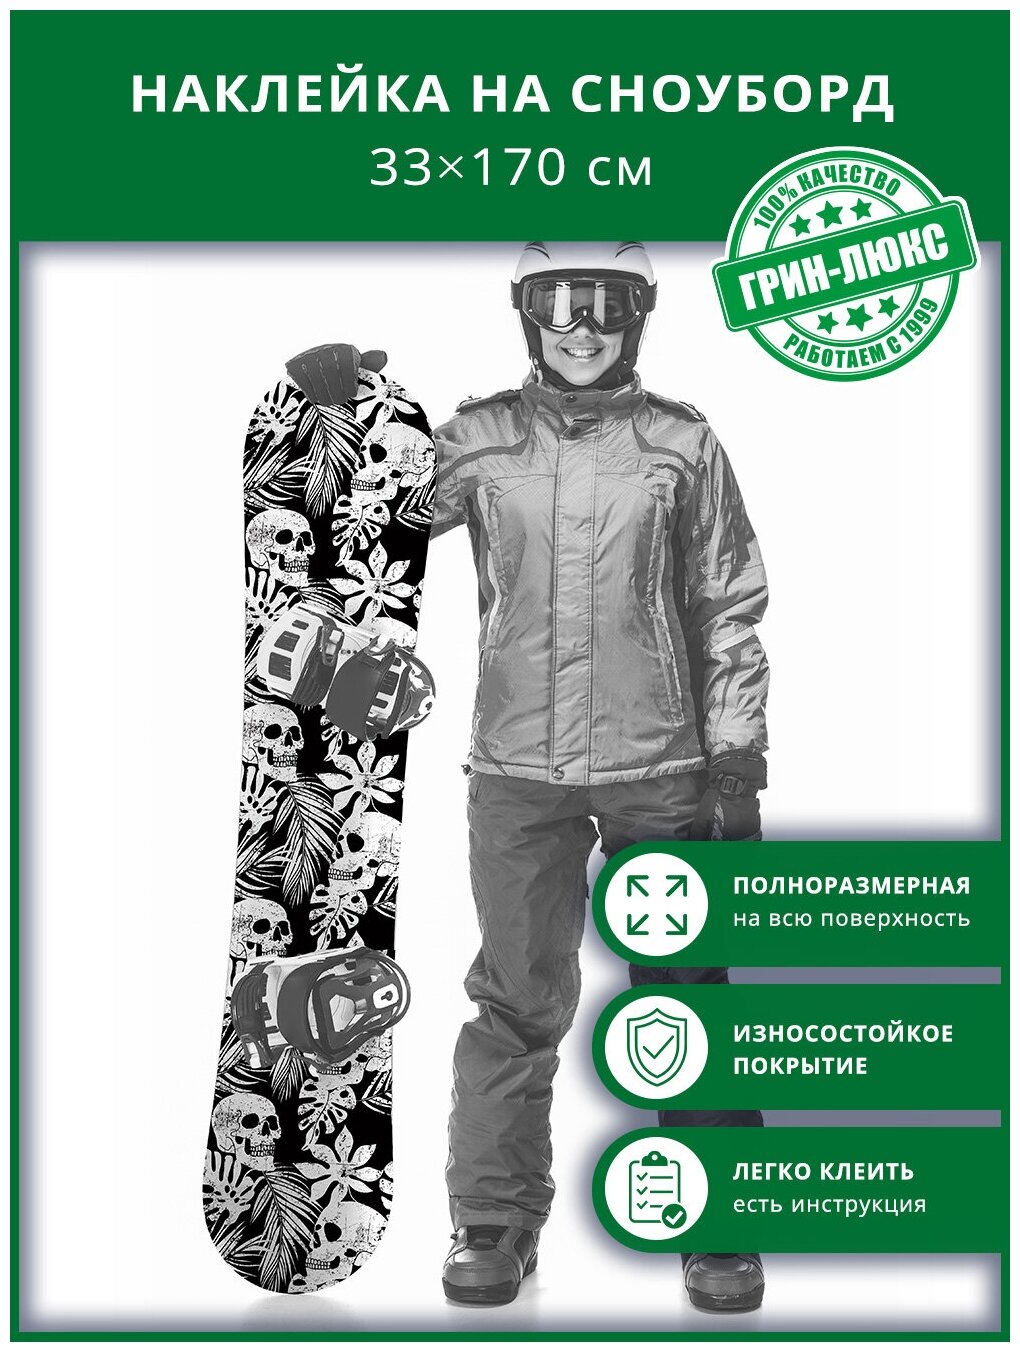 Наклейка на сноуборд с защитным глянцевым покрытием 33х170 см "Опасные тропики"